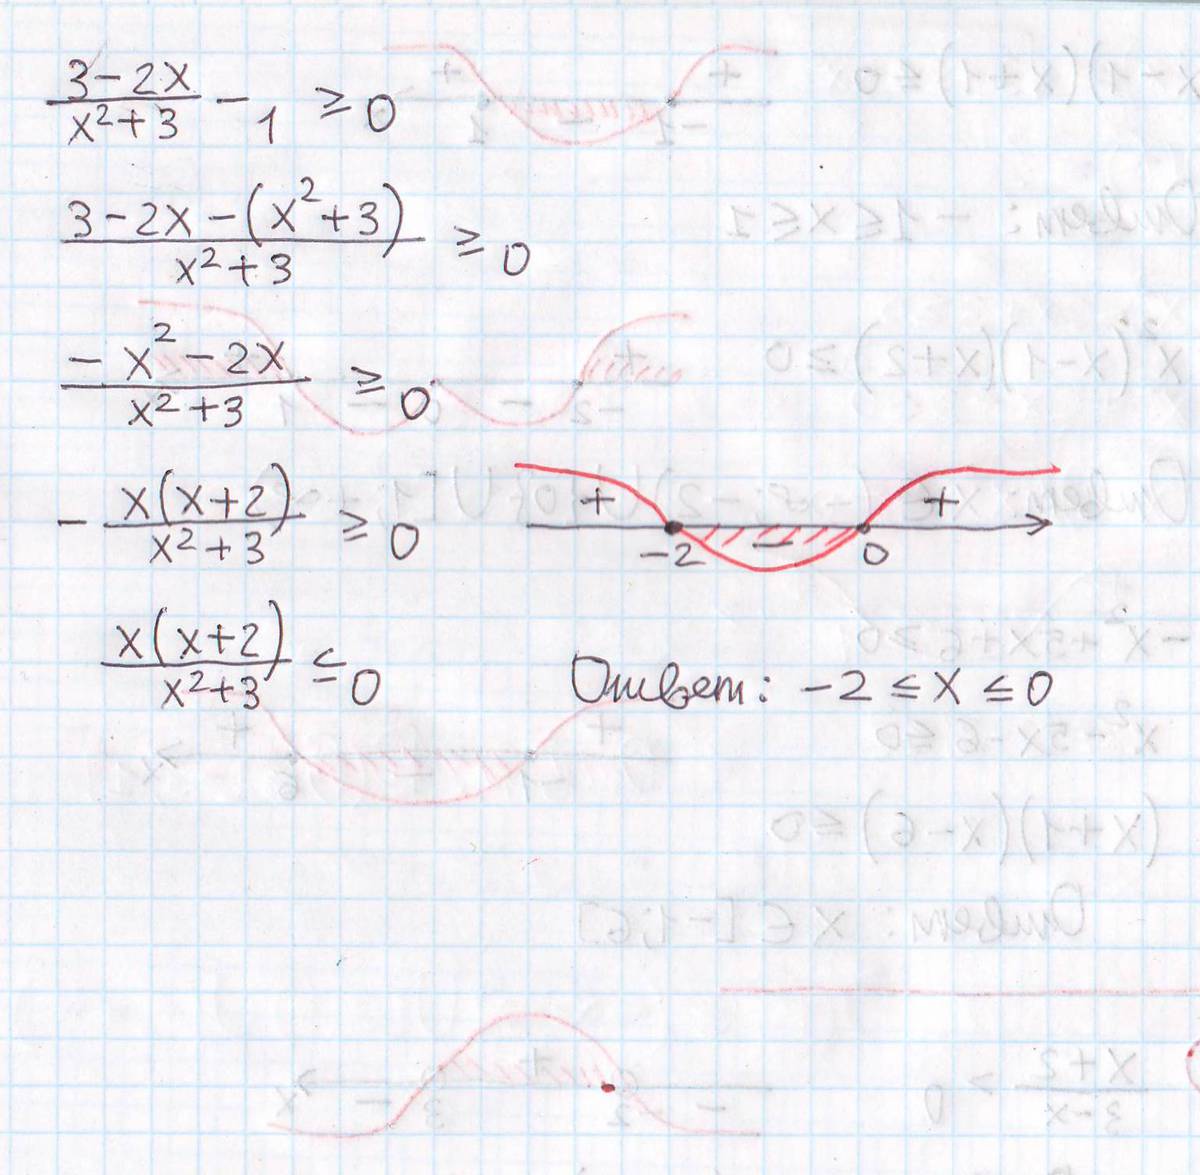 X1 3 x2 9. -X^2-3x+1=0. (1-X^3)^2(X^2-5x)=<0. X^3-X^2-X+1=0. 0.2 X^2 - 1.6 X + 3.2 = 0 2 = 0.